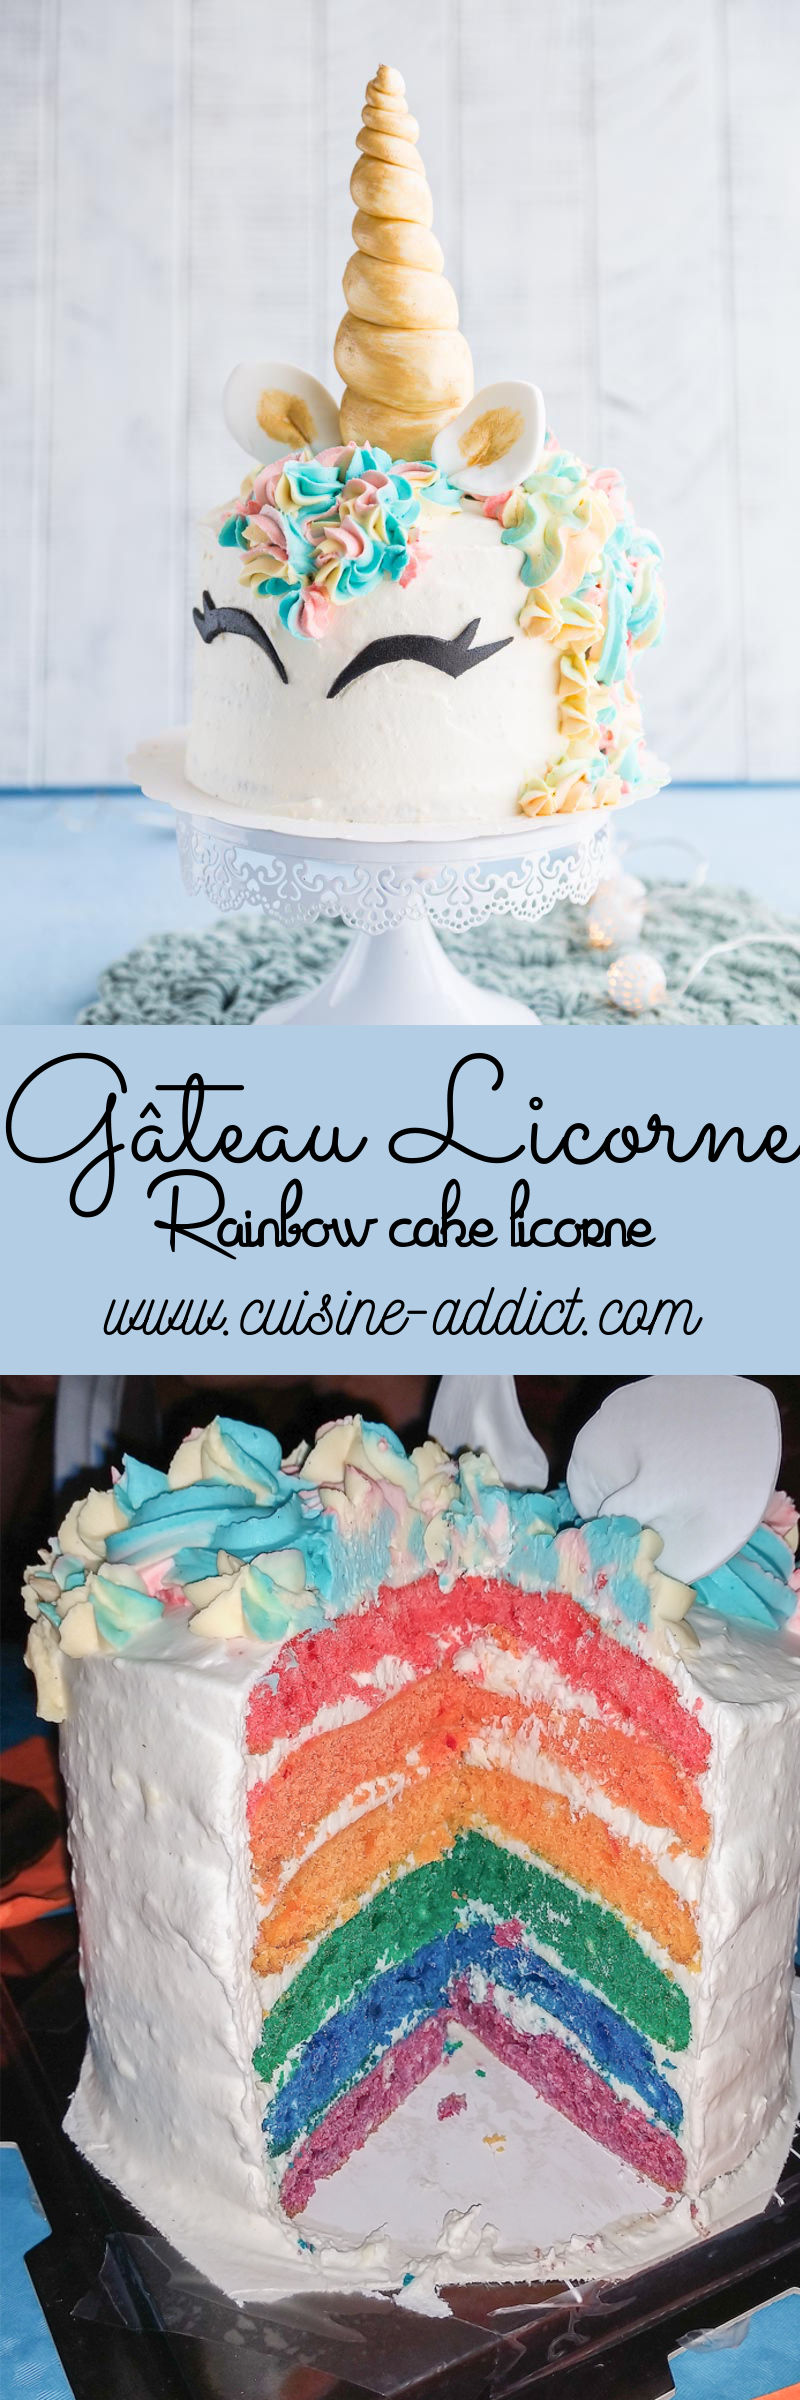 Gâteau Licorne arc-en-ciel {Rainbow cake Licorne}